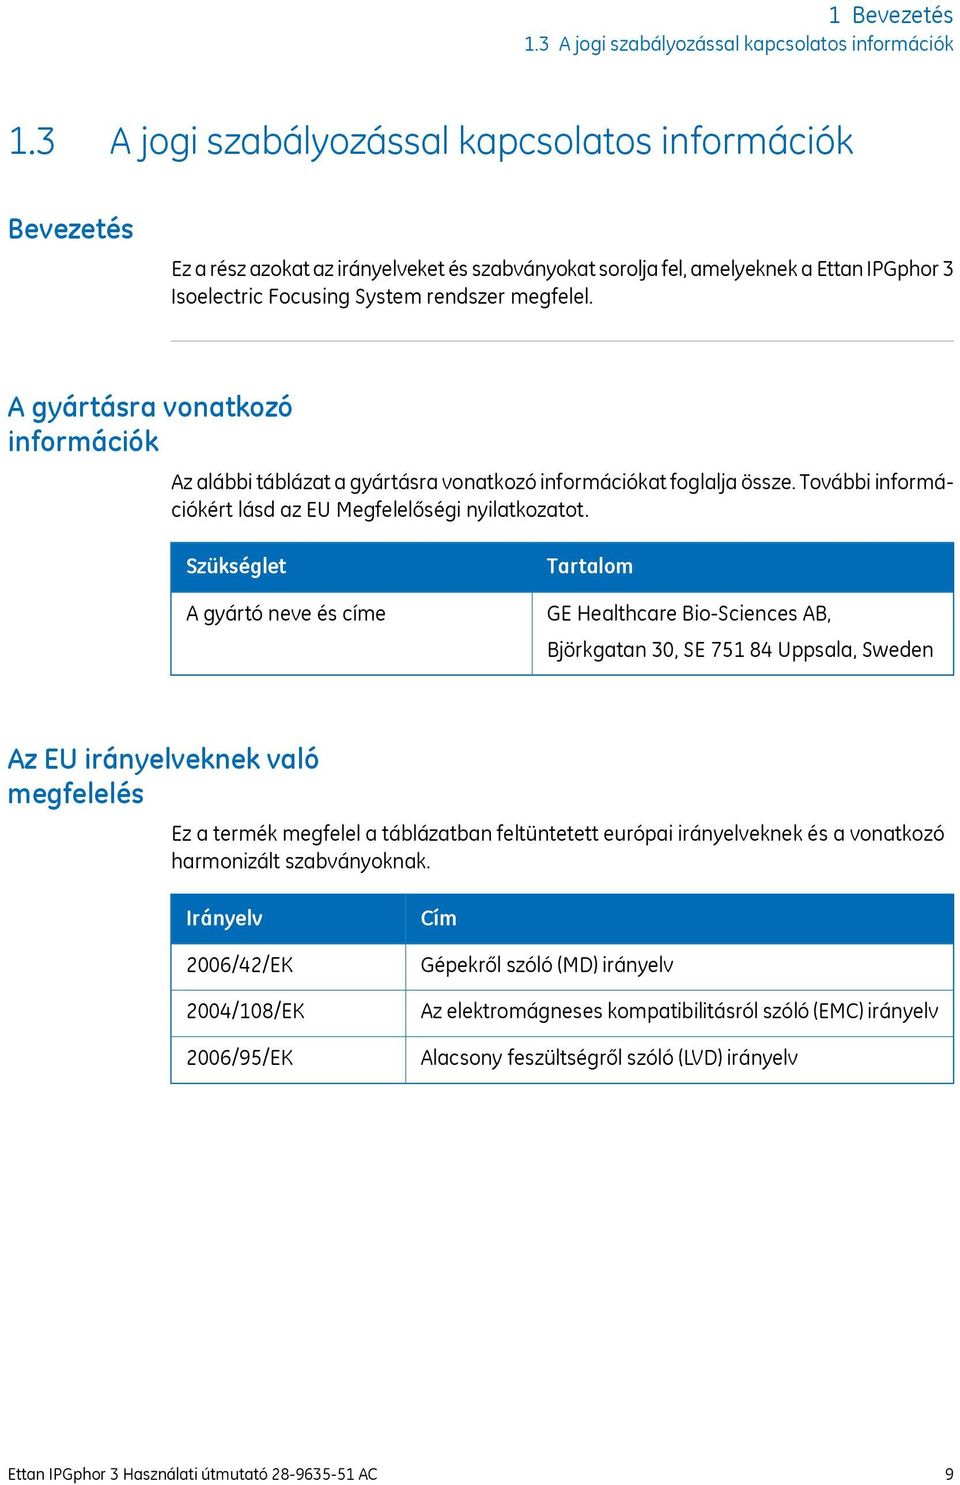 A gyártásra vonatkozó információk Az alábbi táblázat a gyártásra vonatkozó információkat foglalja össze. További információkért lásd az EU Megfelelőségi nyilatkozatot.